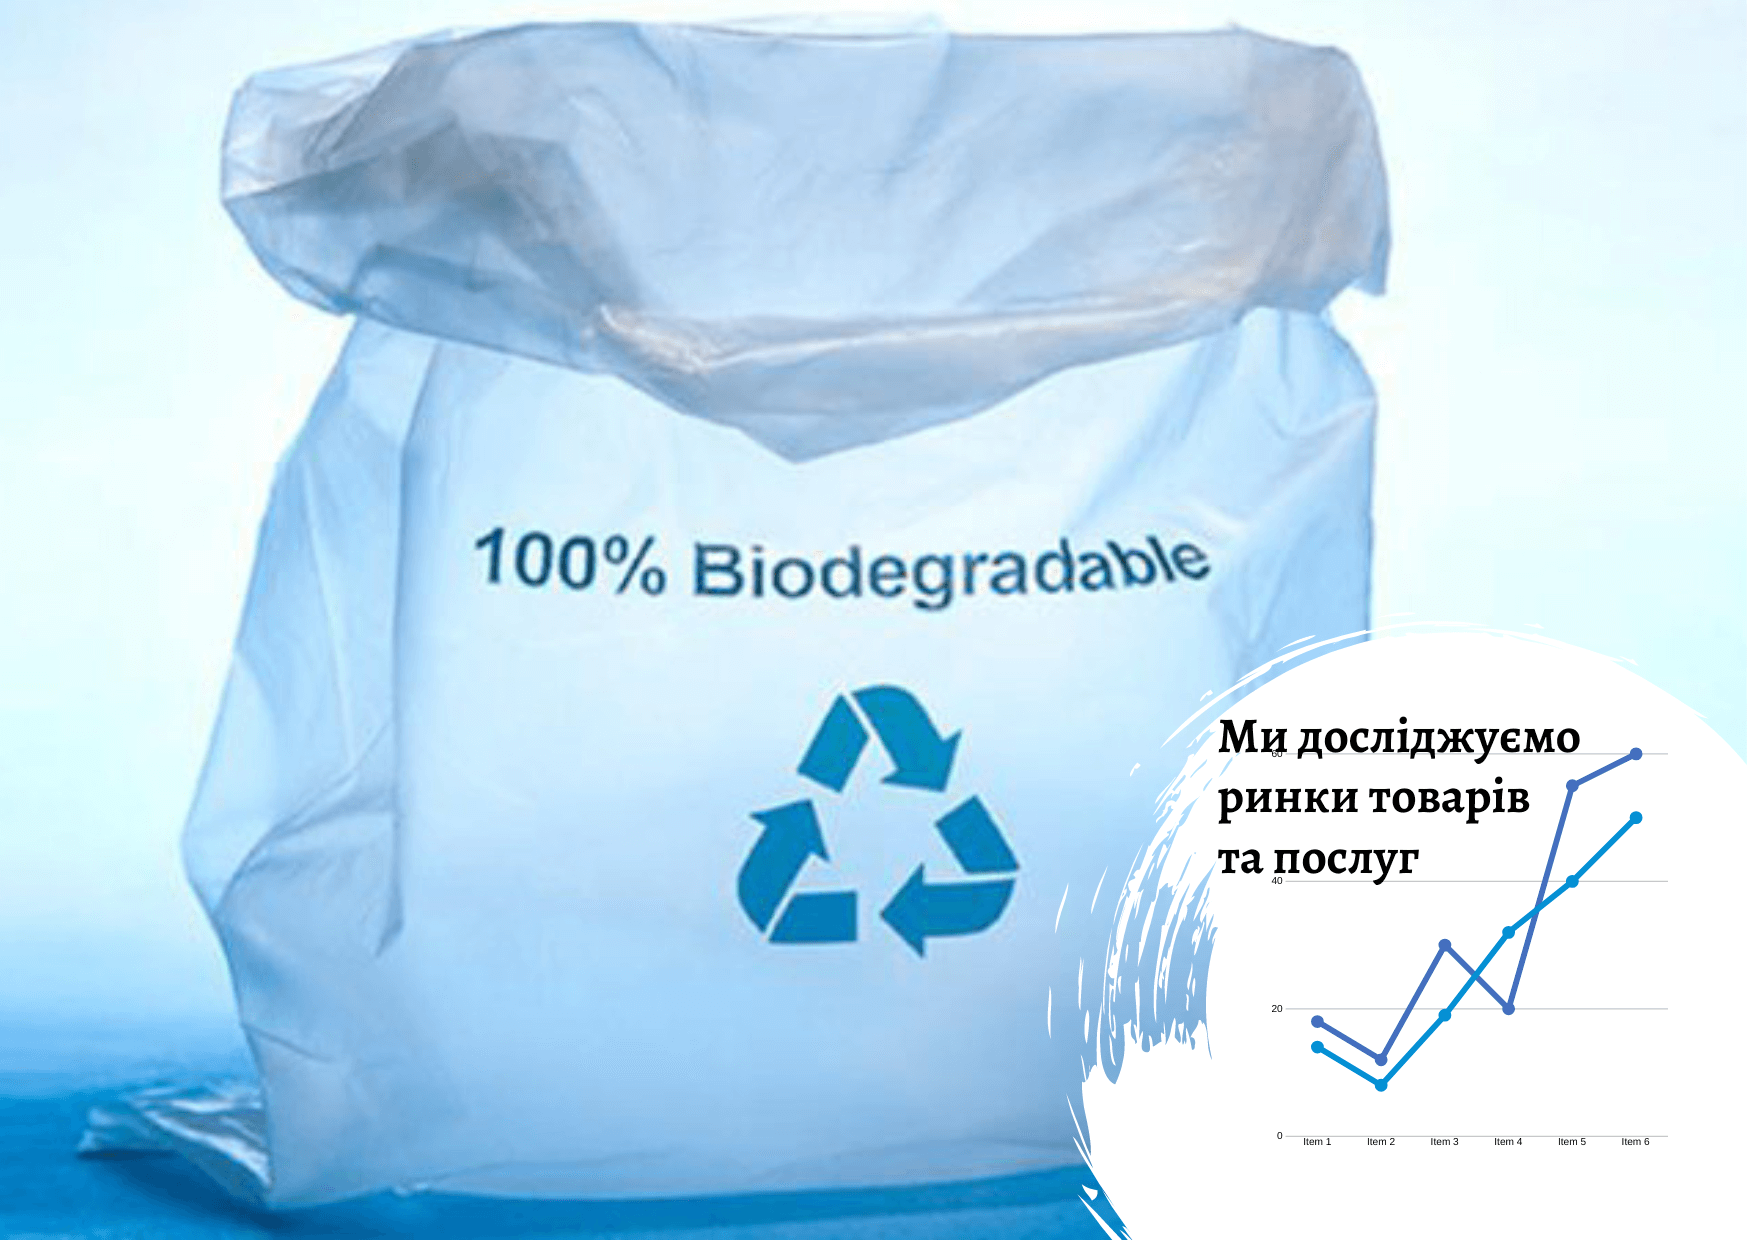 Рынок биоразлагаемого пластика в Украине – данные Pro-Consulting 